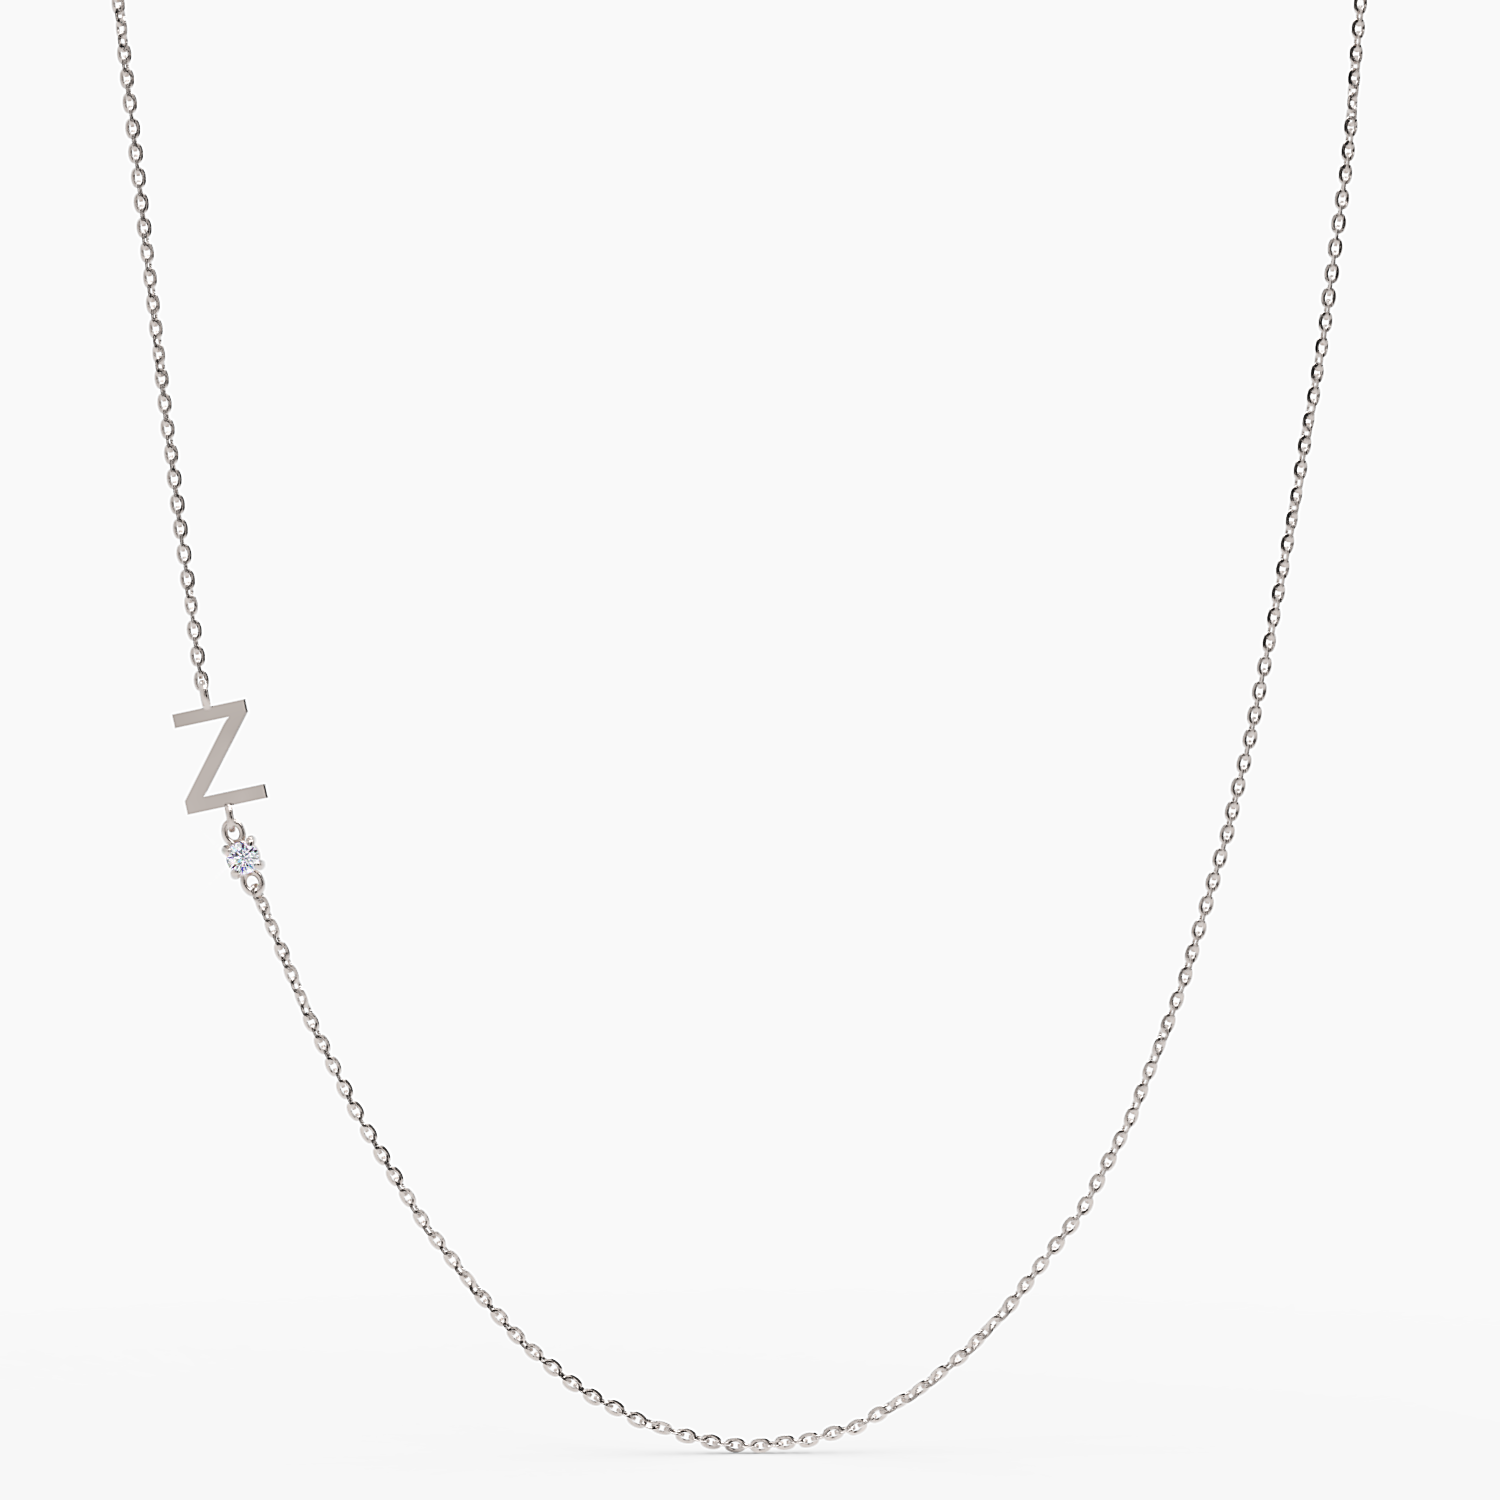 Sideways Initial Z Necklace with Diamond